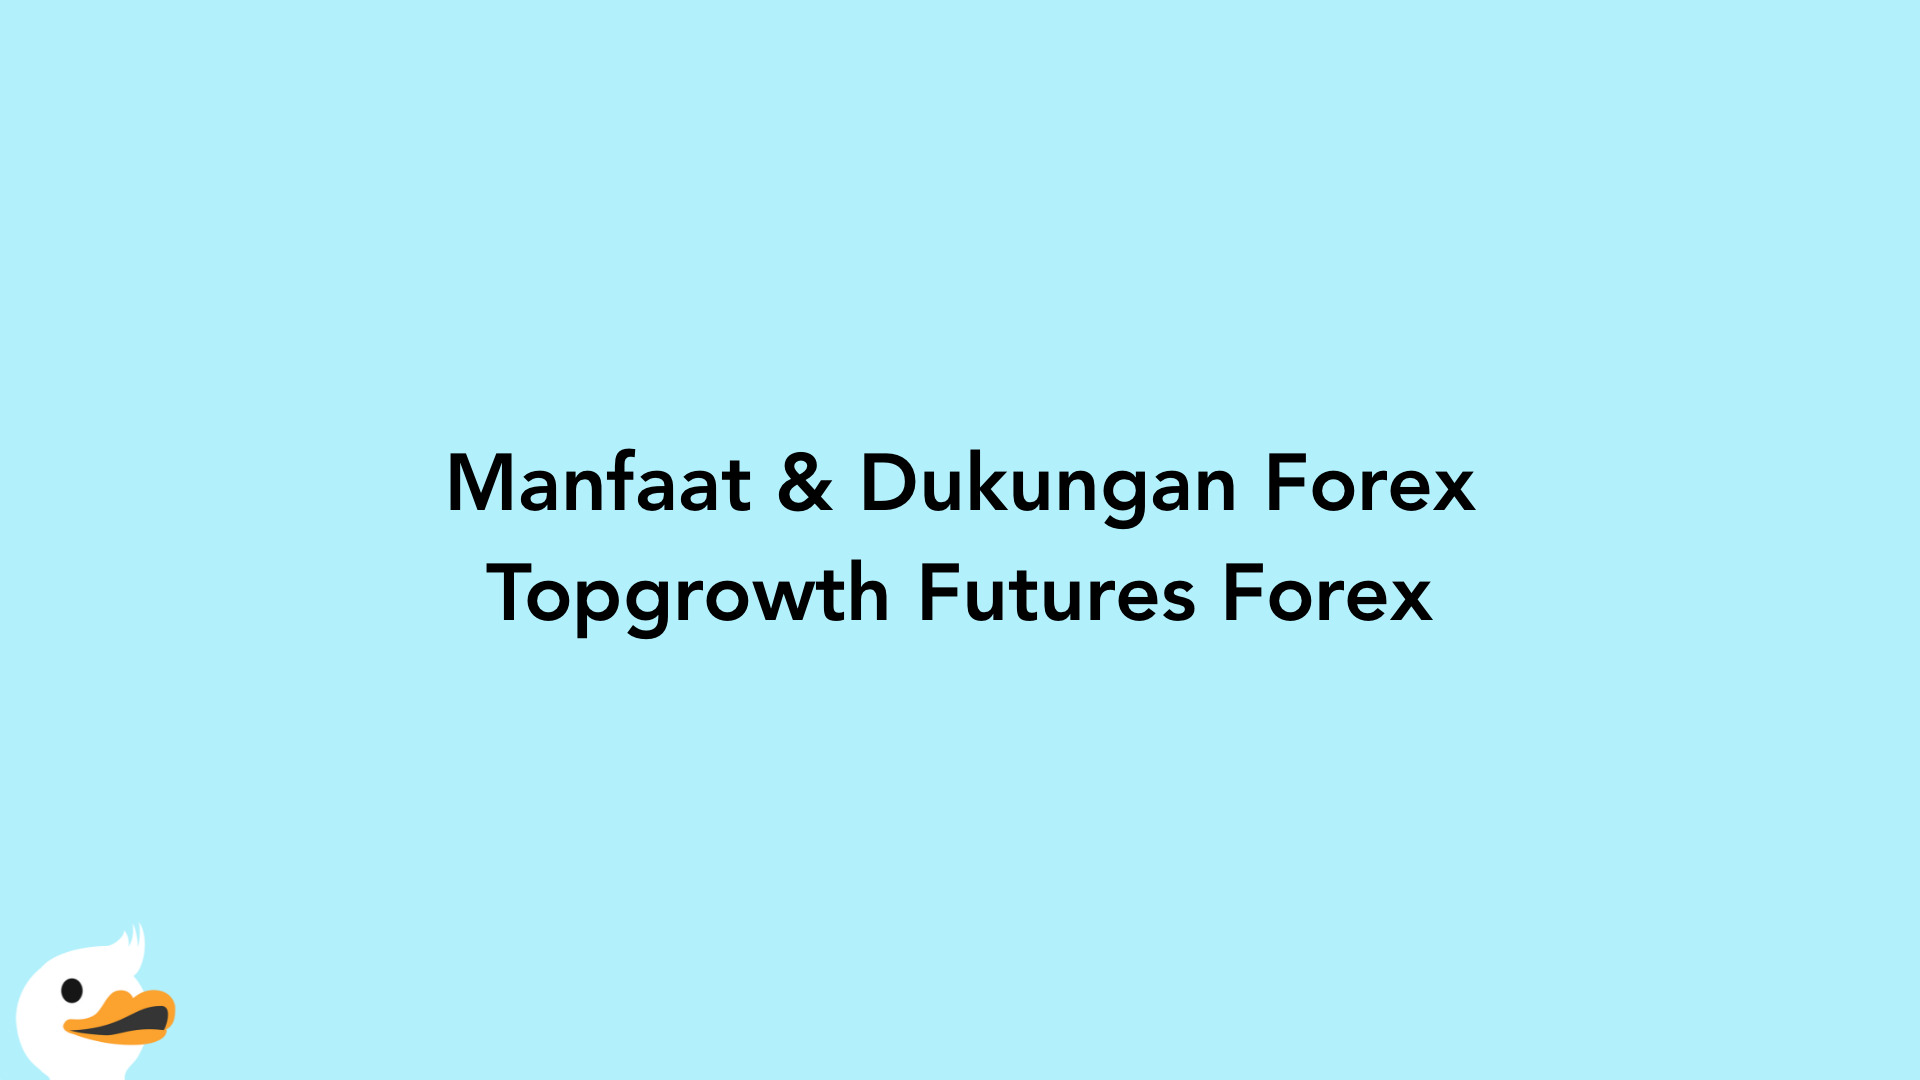 Manfaat & Dukungan Forex Topgrowth Futures Forex